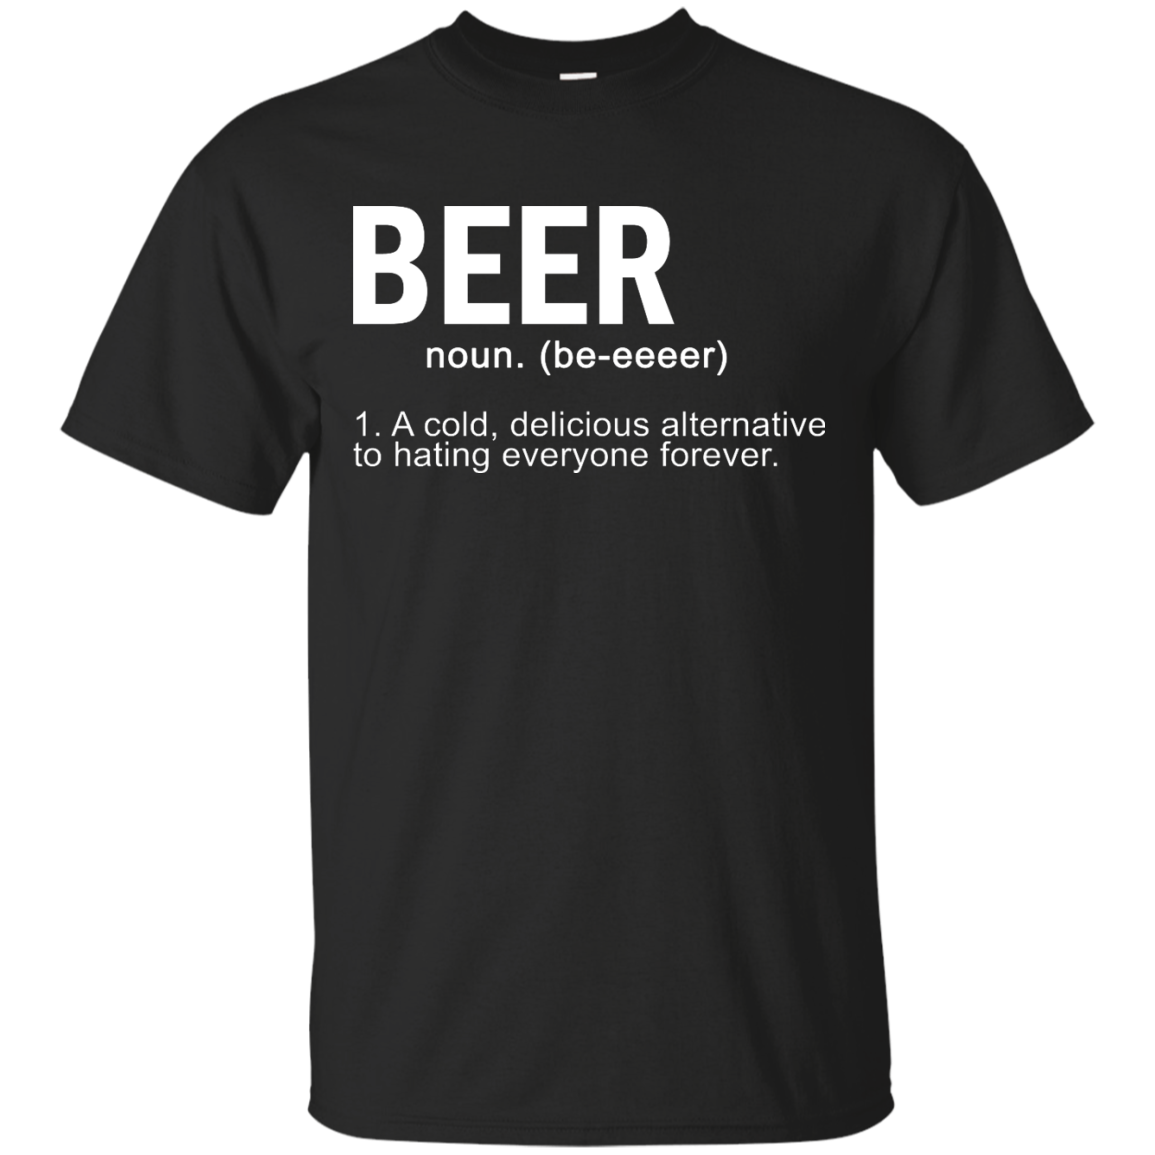 Beer definition shirt, tank, hoodie